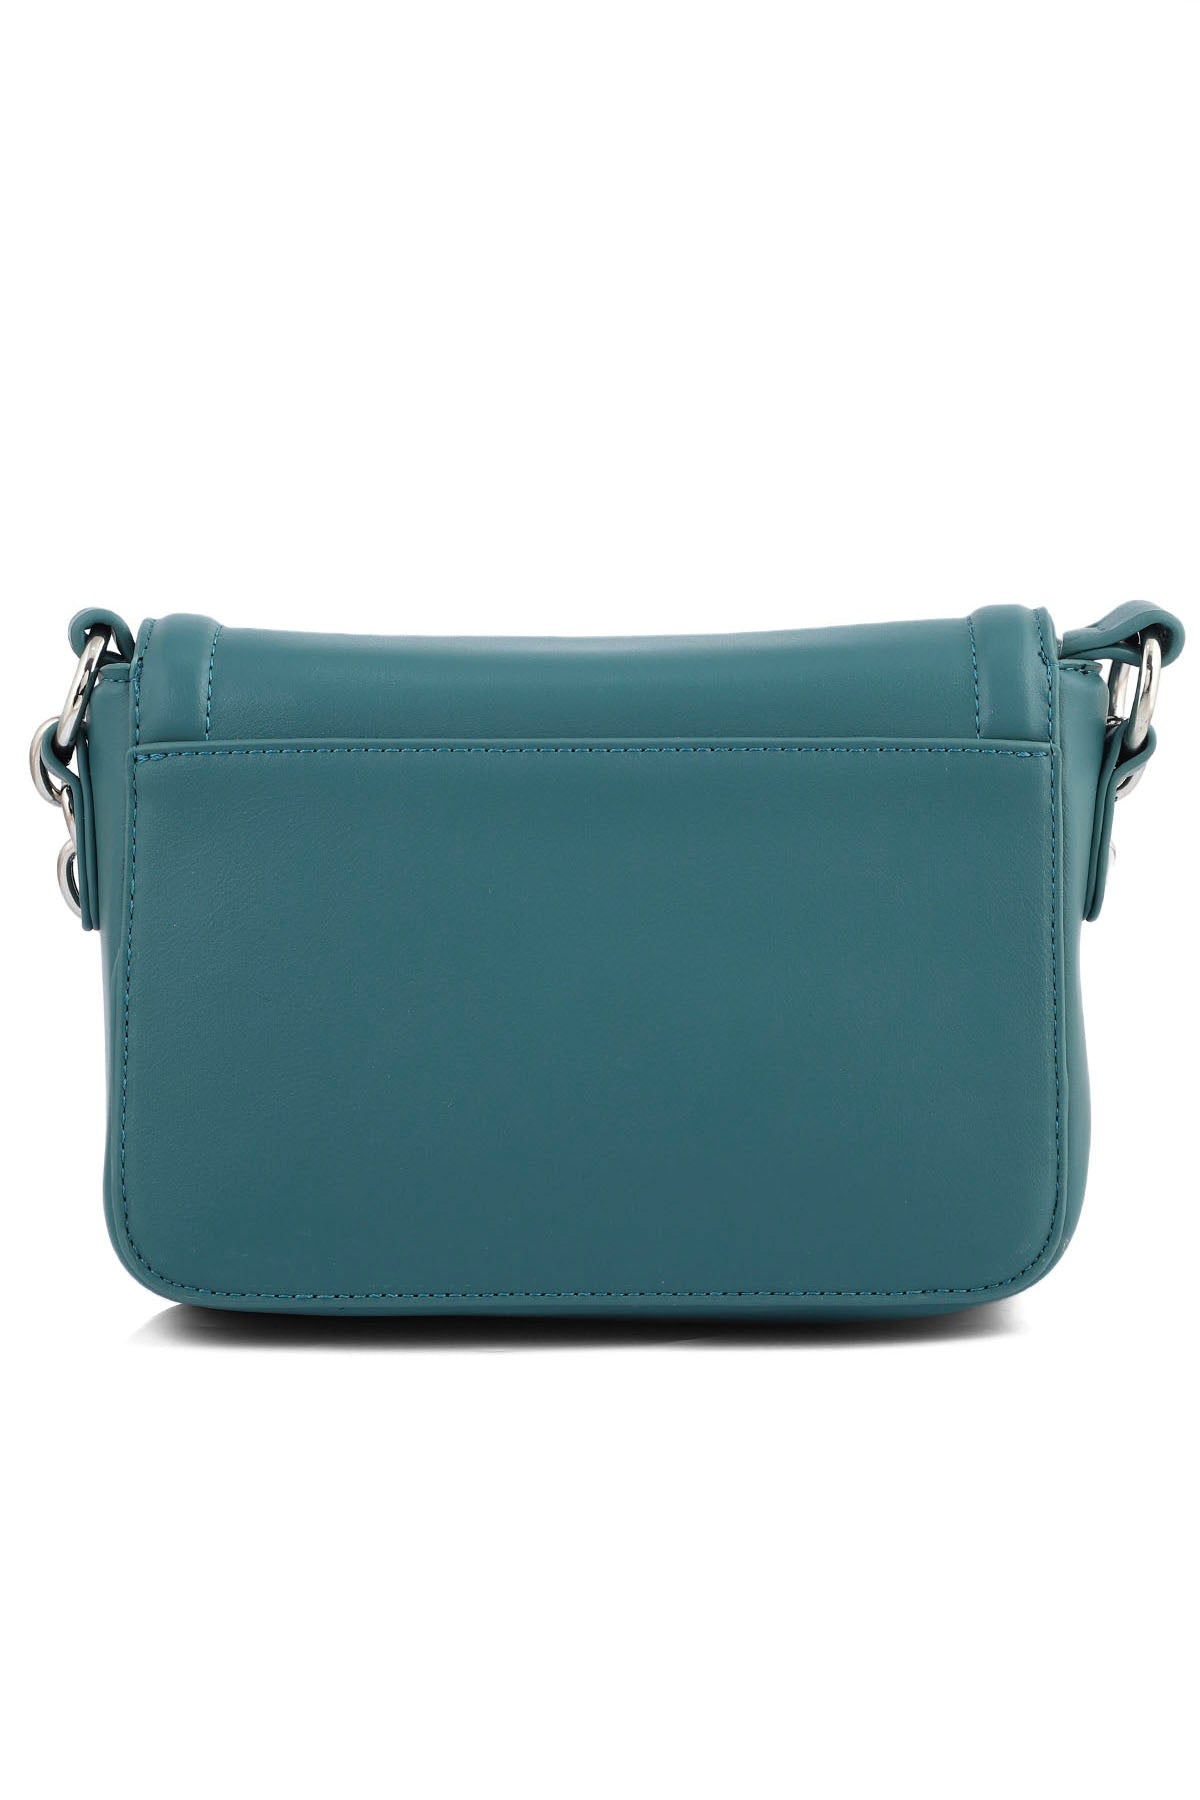 Flap Shoulder Bags B15030-Green